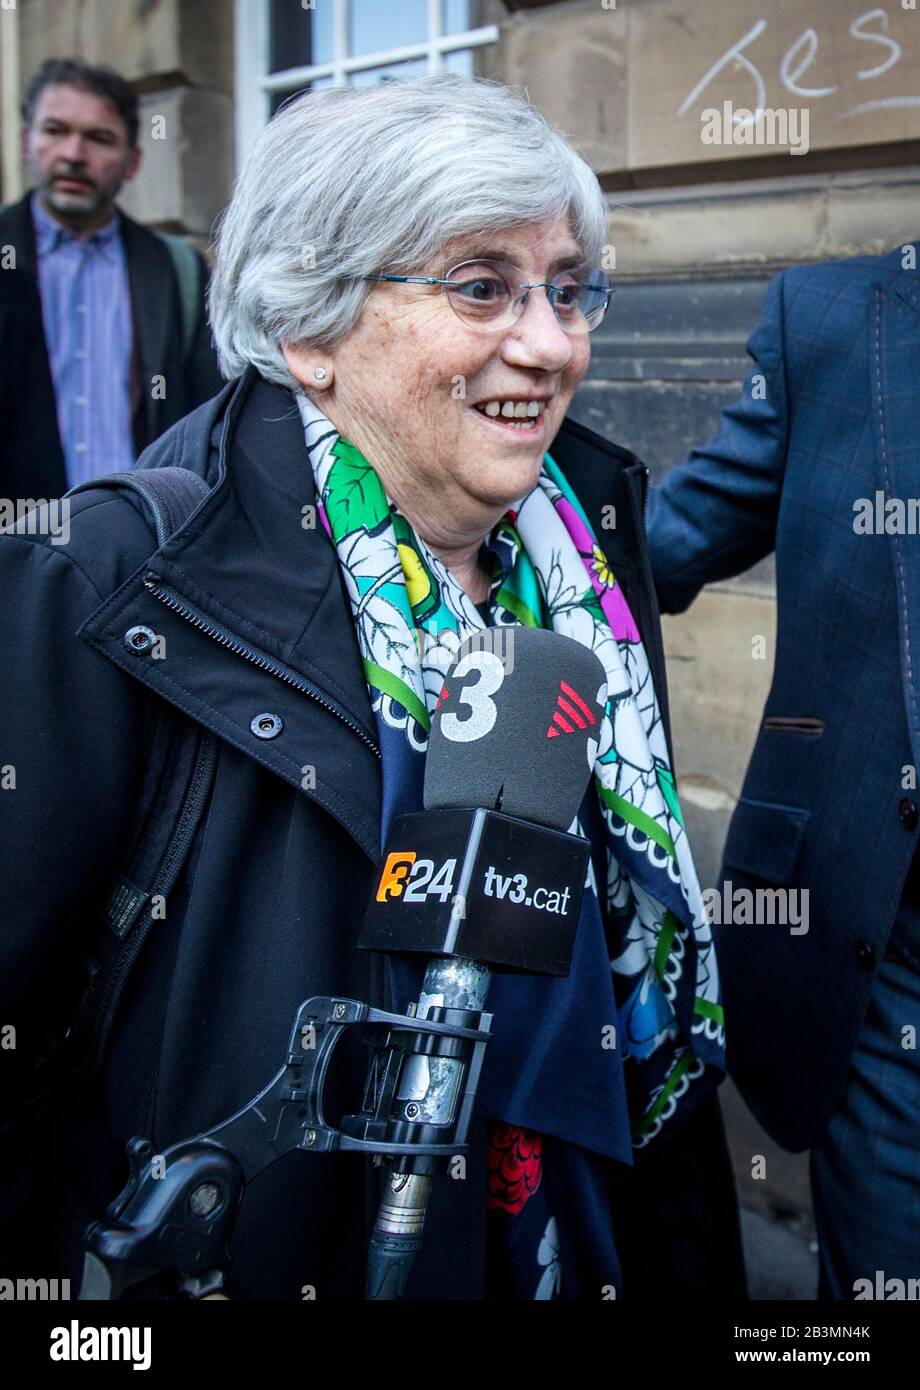 Die ehemalige katalanische Politikerin und Professorin an der University of St Andrews, Clara Ponsati, kommt zum Sheriff Court von Edinburgh, Edinburgh, um eine weitere Vorabverhandlung über den Vorwurf der Verweidung ihrer Rolle beim unsanktionierten Unabhängigkeitsreferendum Kataloniens im Jahr 2017 zu erhalten. Stockfoto